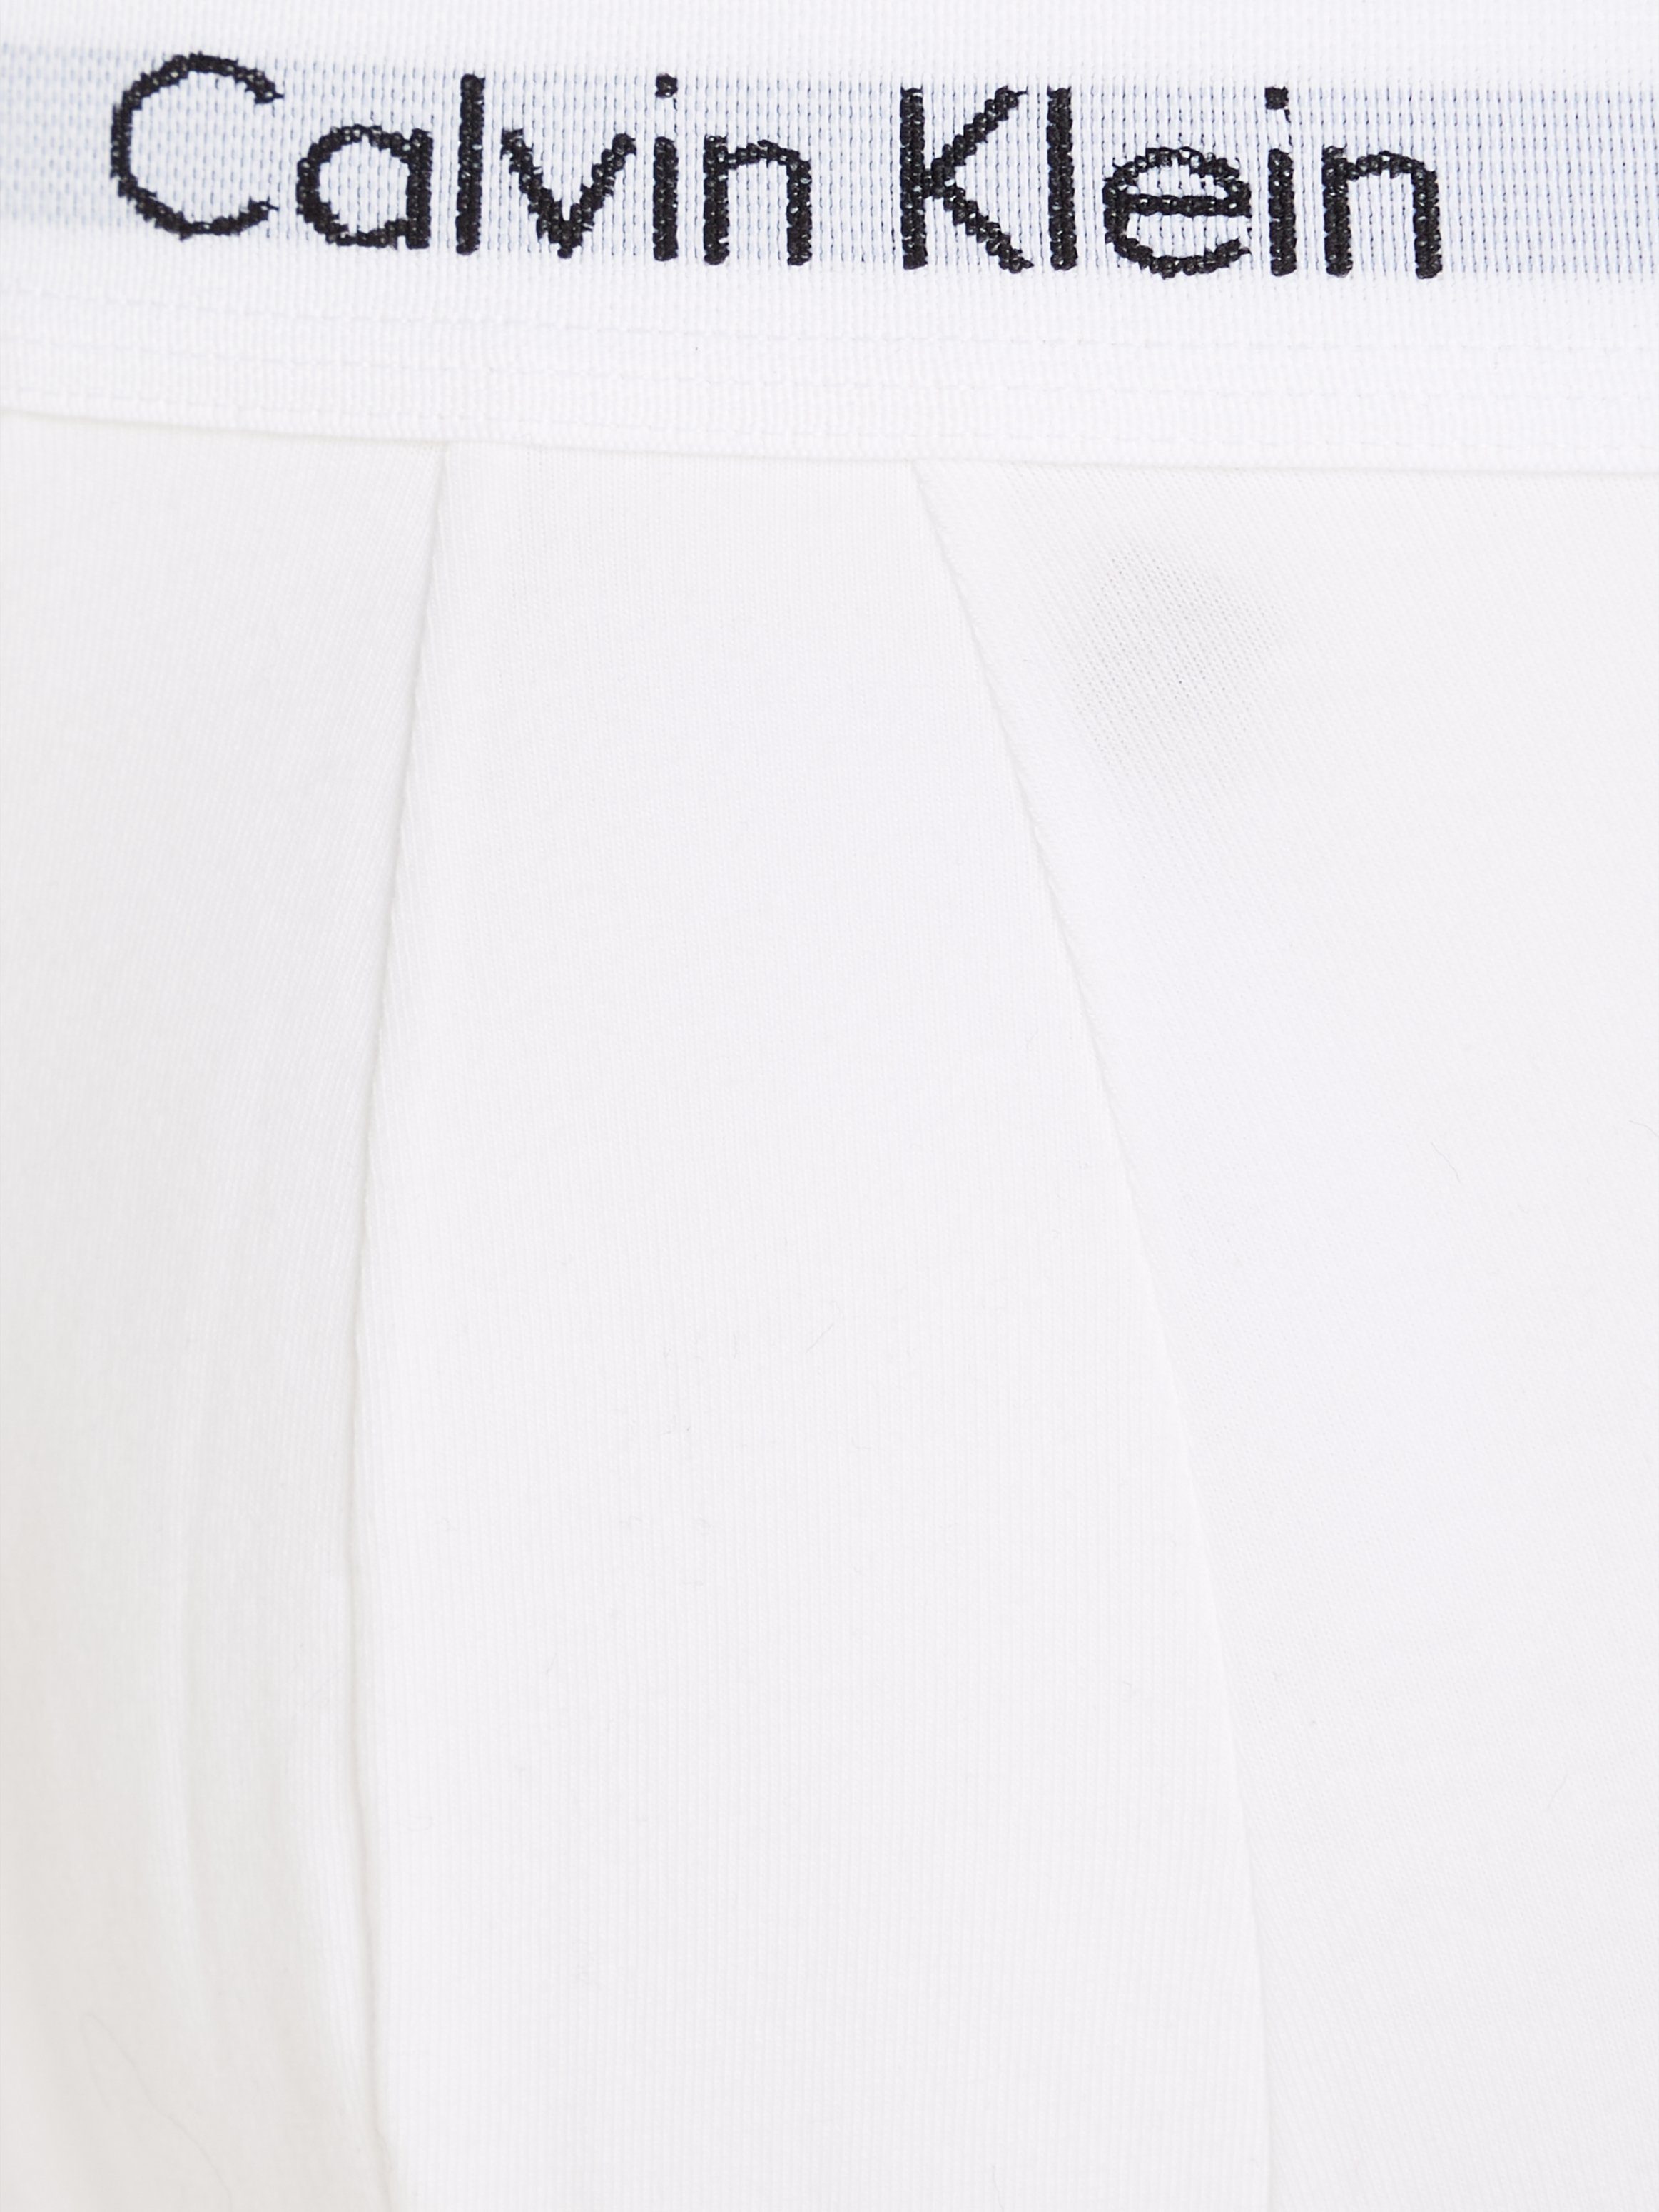 Klein Calvin (3-St) Underwear Hipster mit Webbund weißem